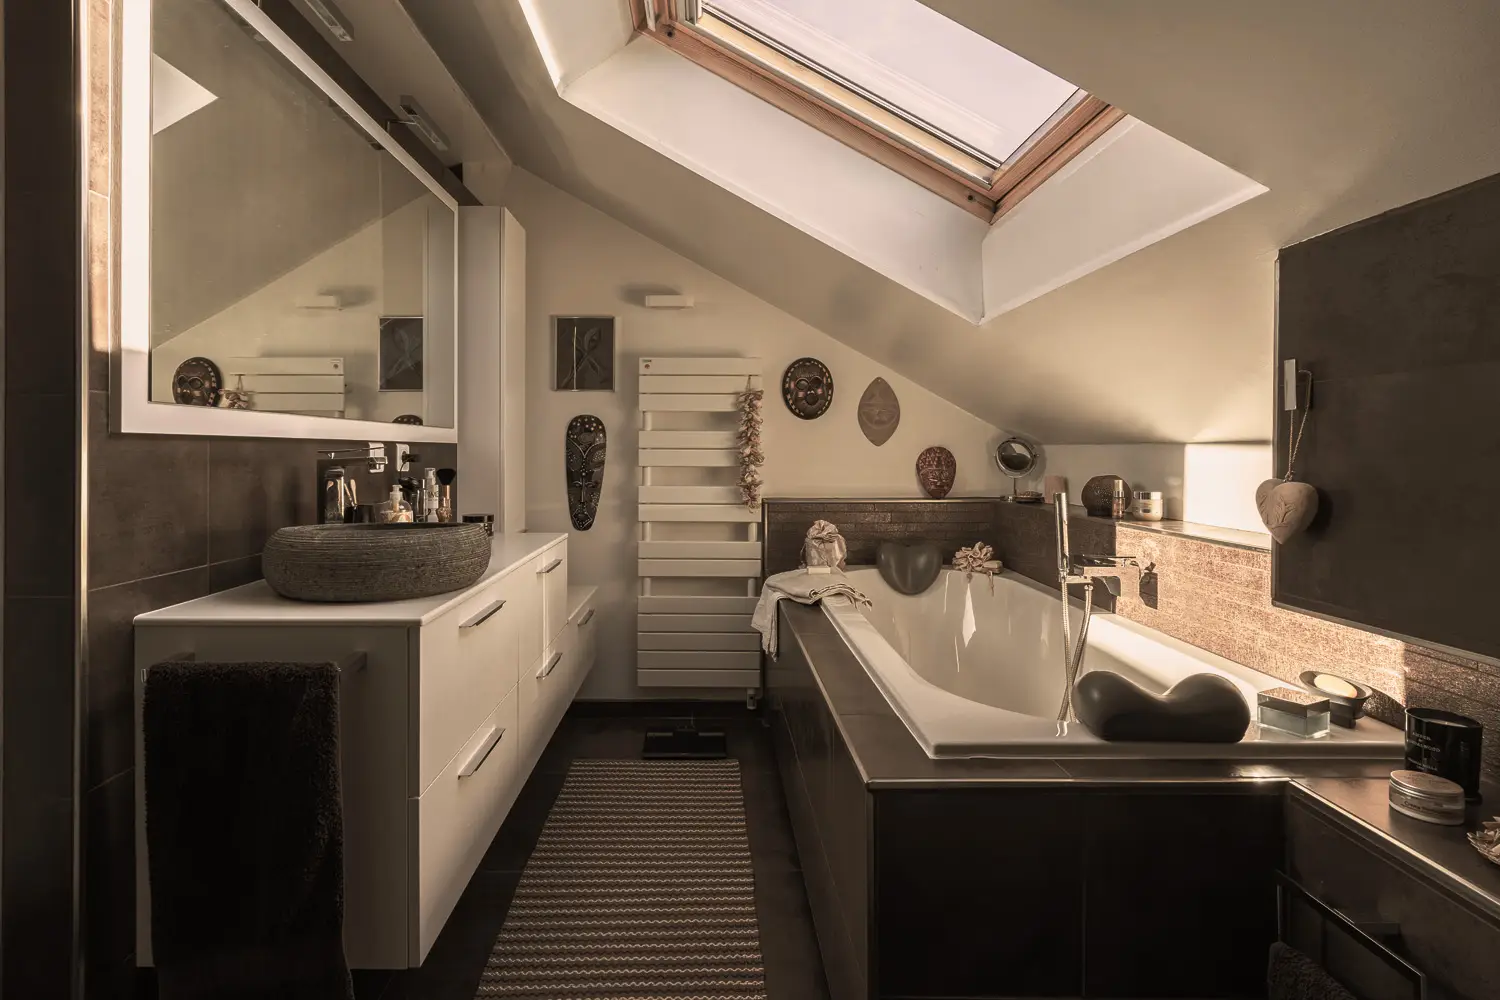 Photo de la salle de bain avec sol et revêtements muraux en céramique dans les tons de bruns, une grande baignoire, un meuble blanc et lavabo en pierre ; Rénovation par le studio Elles Interior Design.